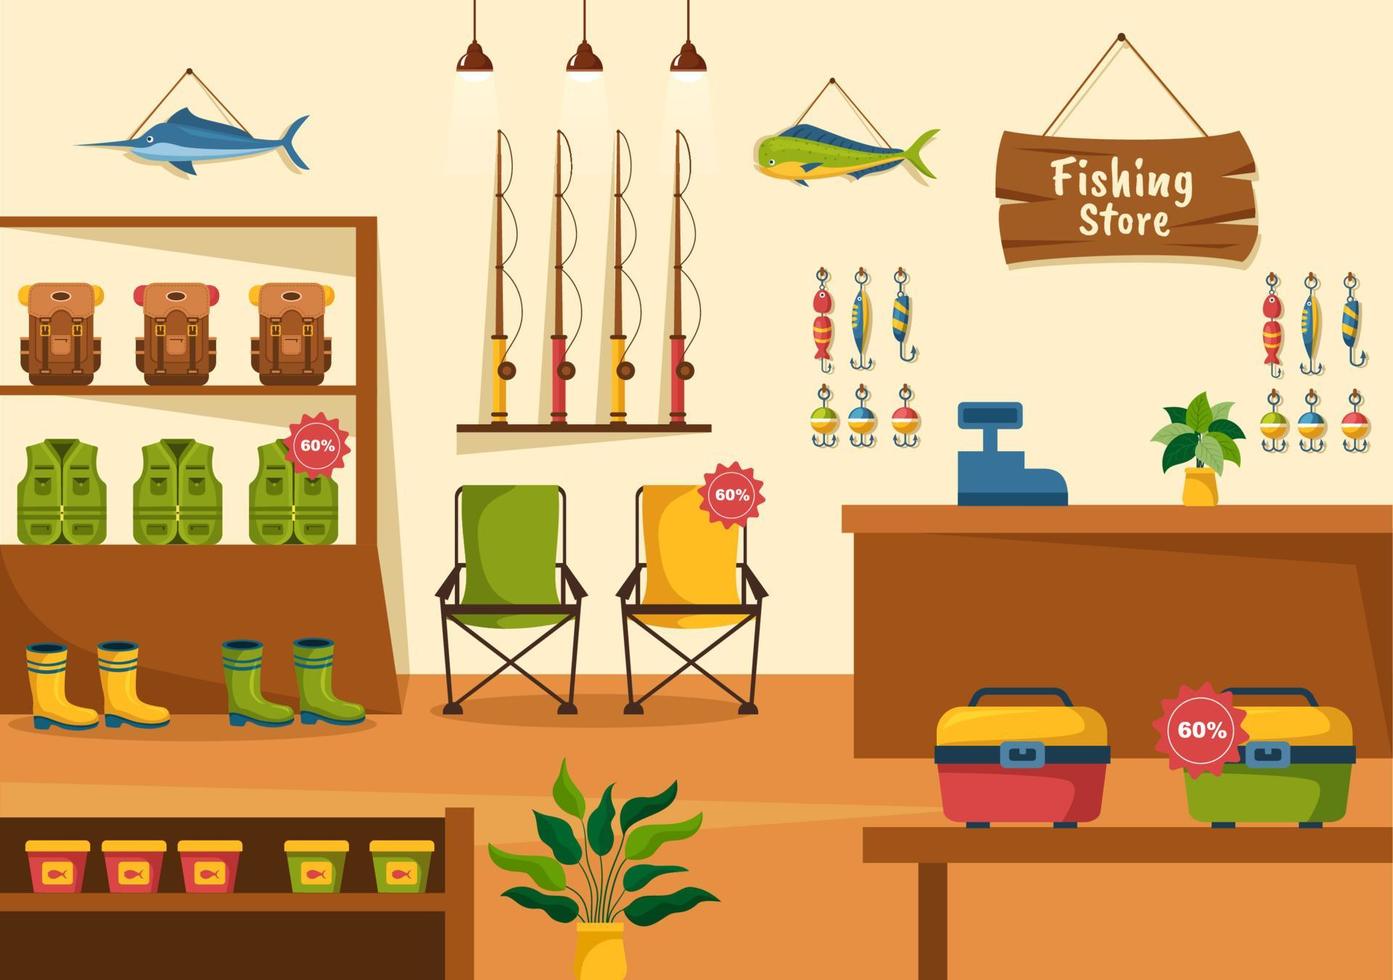 magasin de pêche vendant divers équipements de pêche, appâts, accessoires de capture de poisson ou articles sur illustration de modèles dessinés à la main de dessin animé plat vecteur